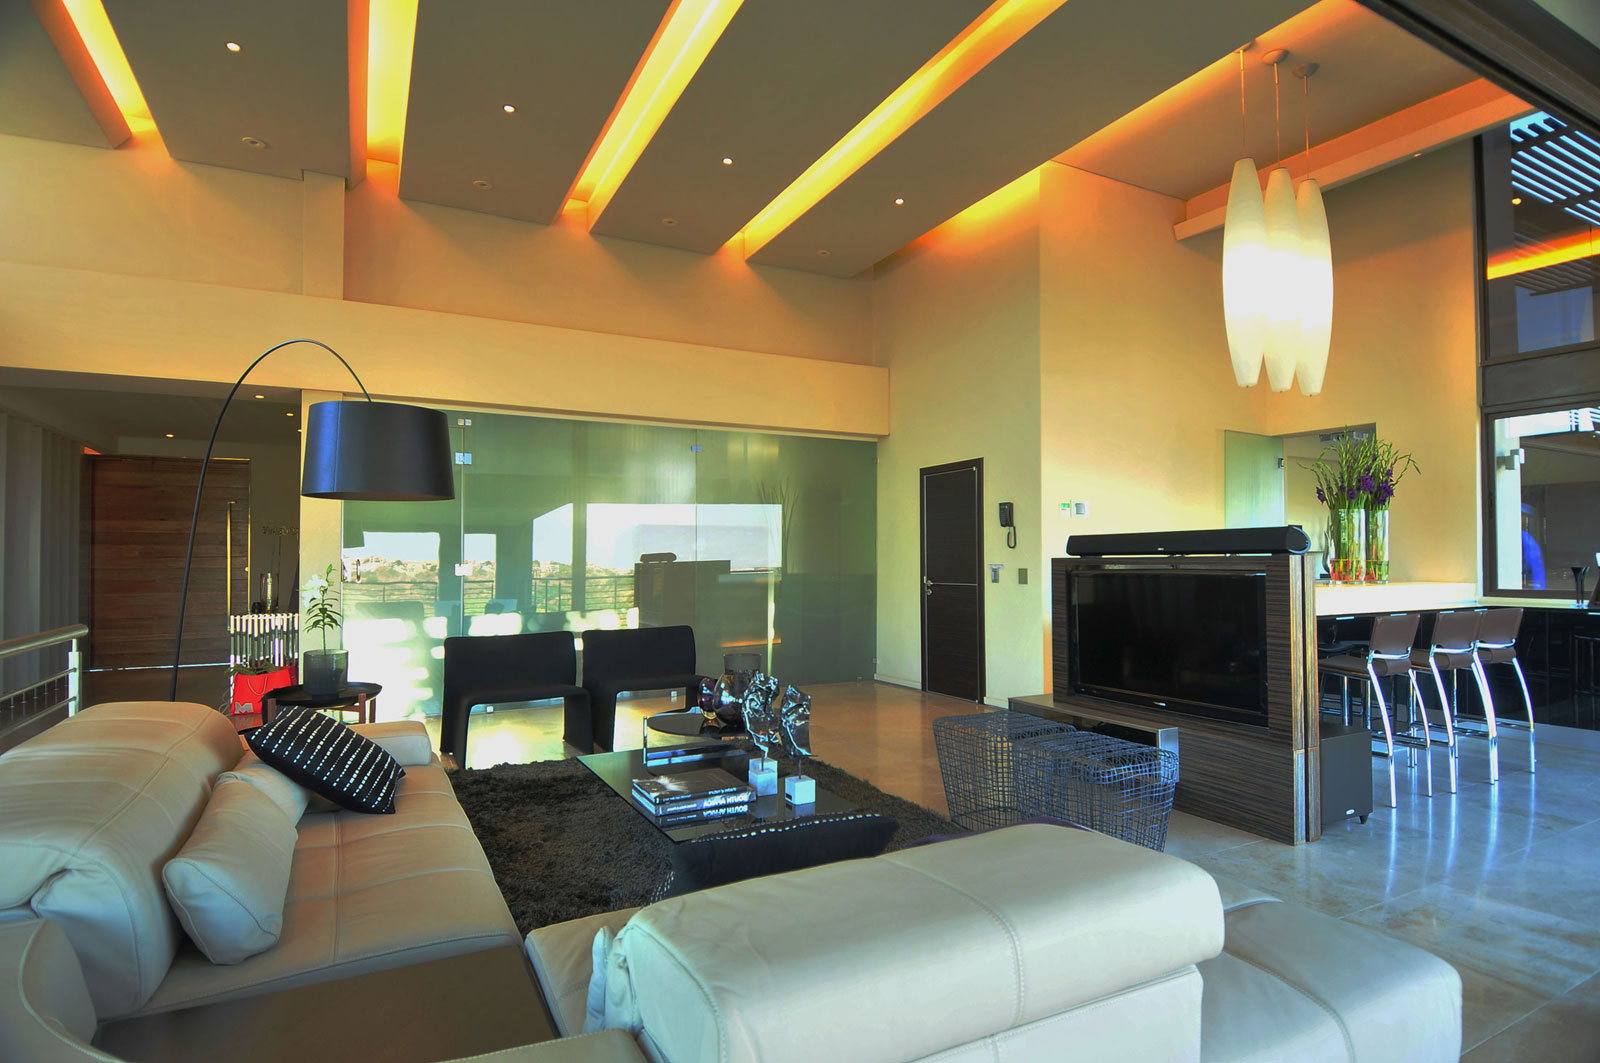 lighting ideas for living room ceiling